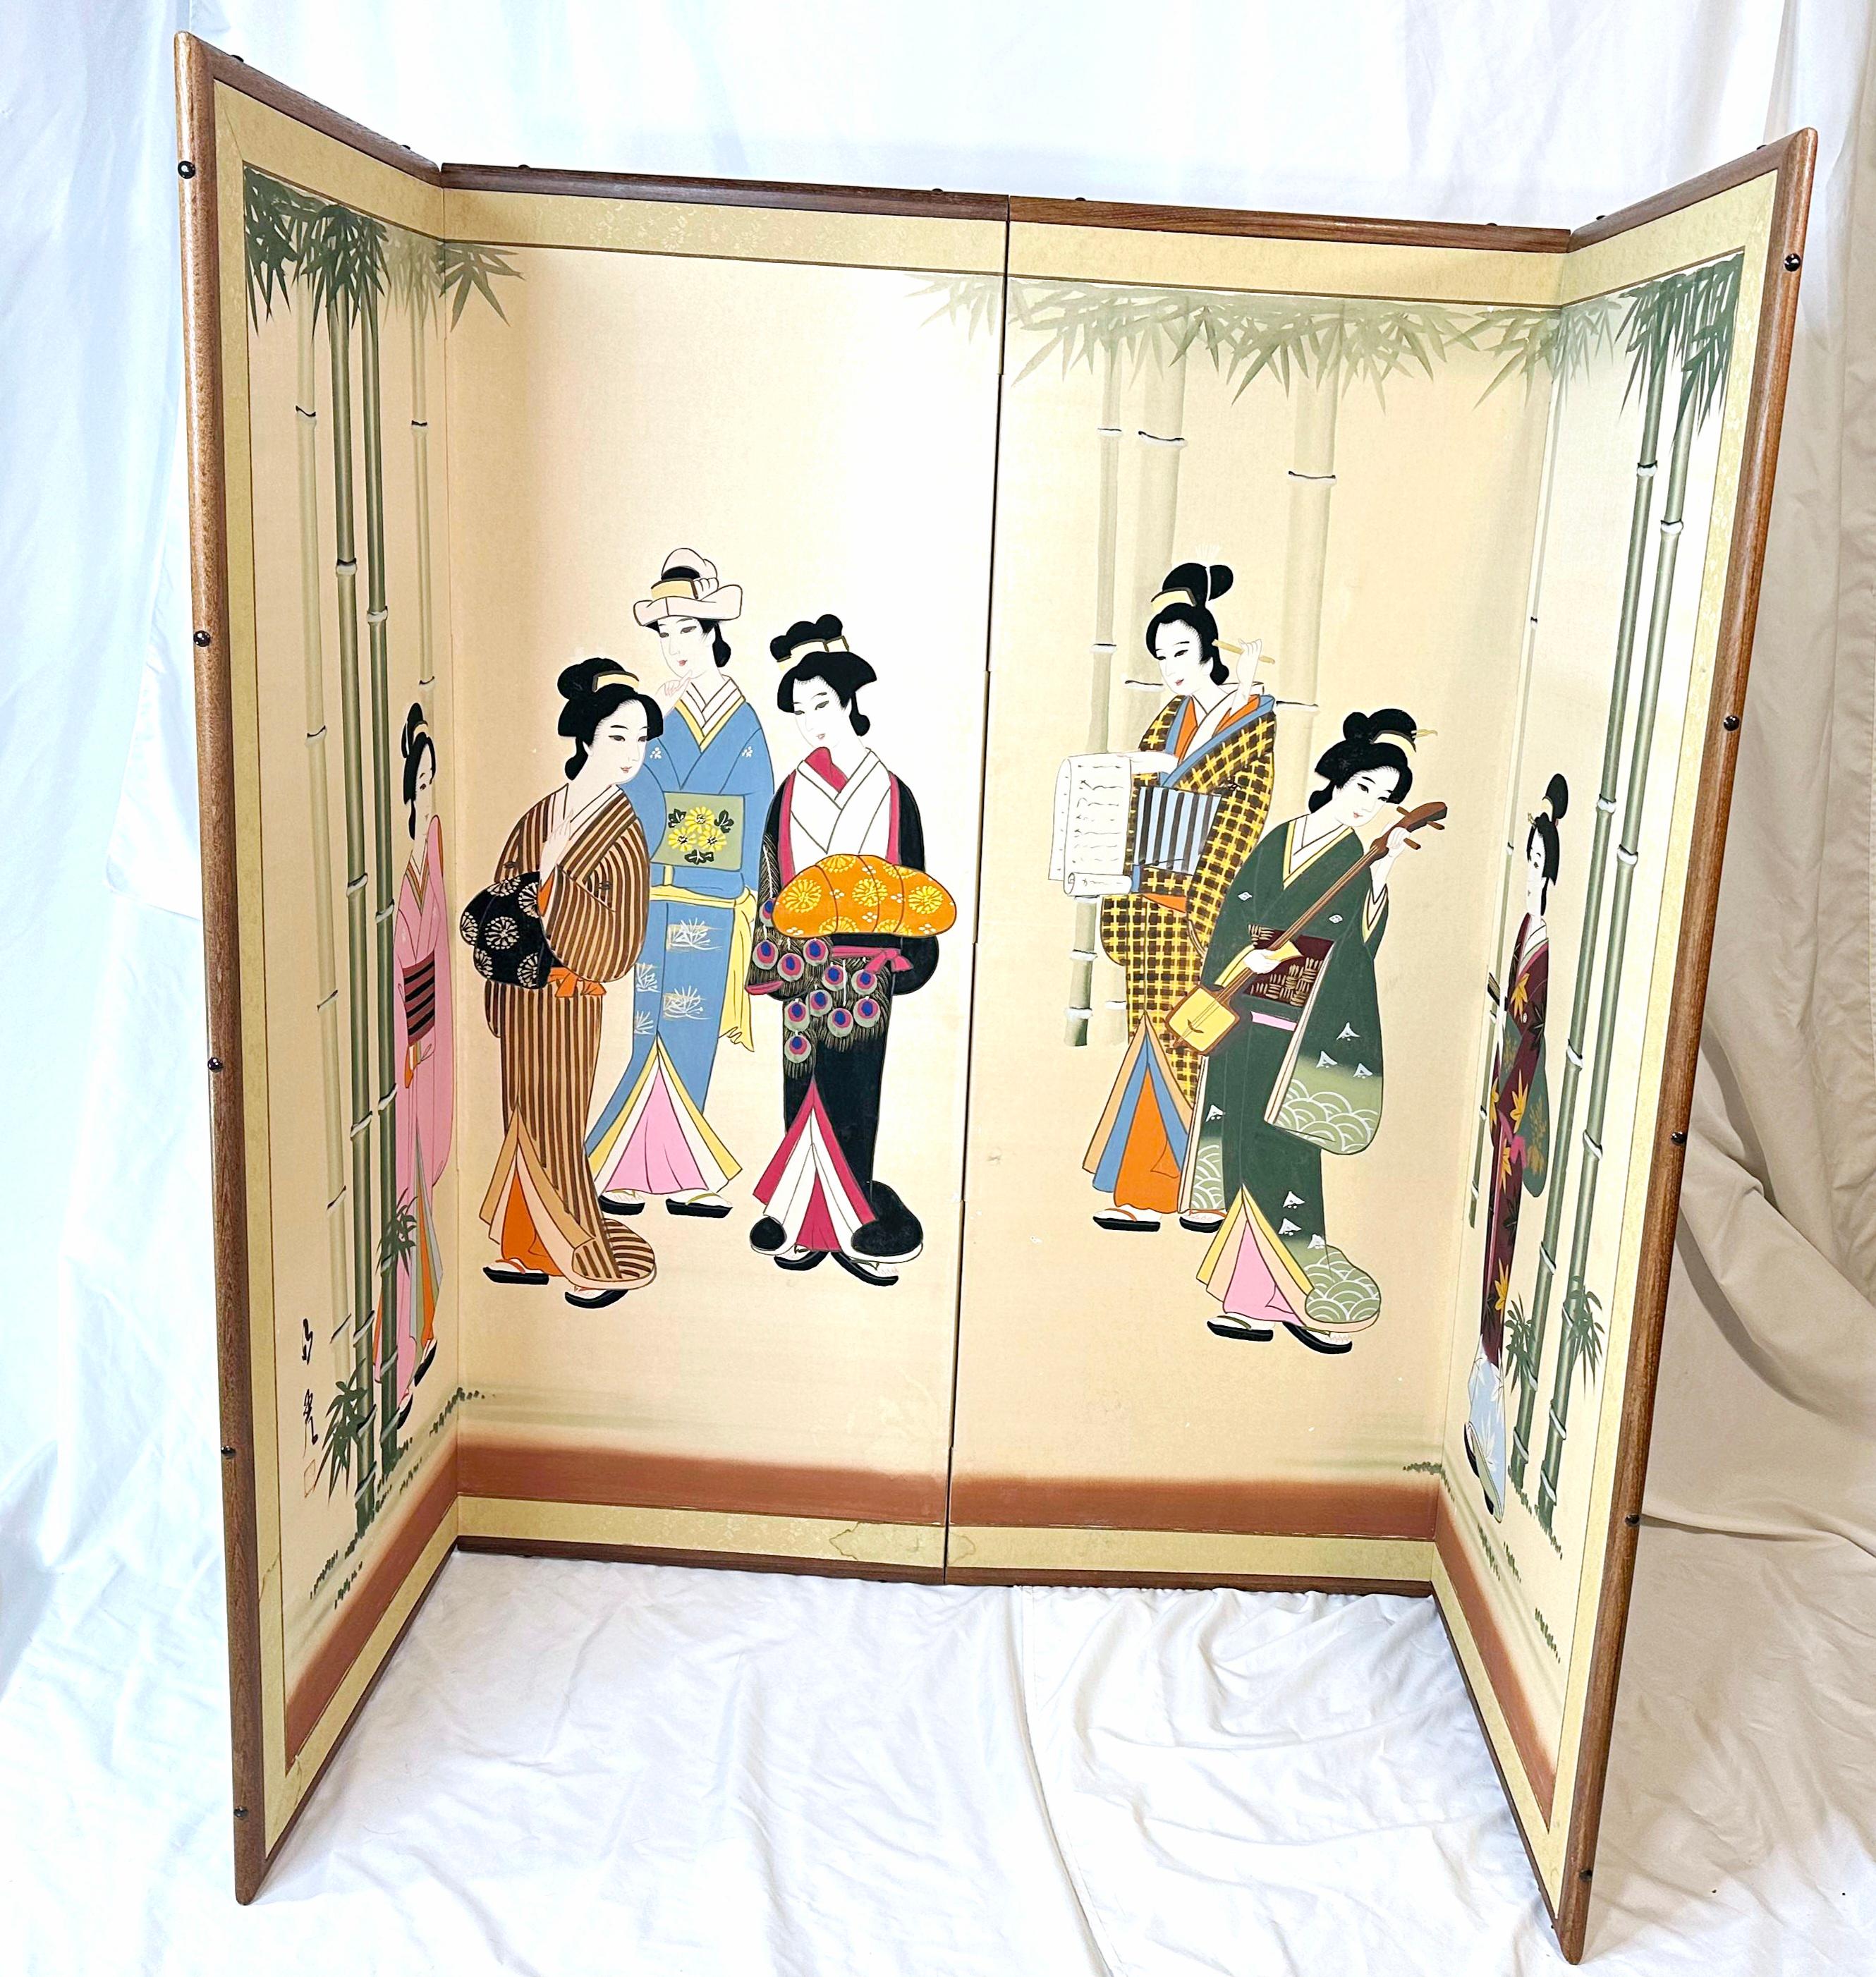 1960-1970s
Handbemalte Seide.
Unterlage aus Reispapier. 
Hergestellt in Japan. 
Sechs farbenfrohe Geishas, umgeben von Bambusbäumen.
Kleine Details, ein Shamisen oder eine japanische Gitarre, eine Reispapierrolle, eine Geisha, die einen Kimono